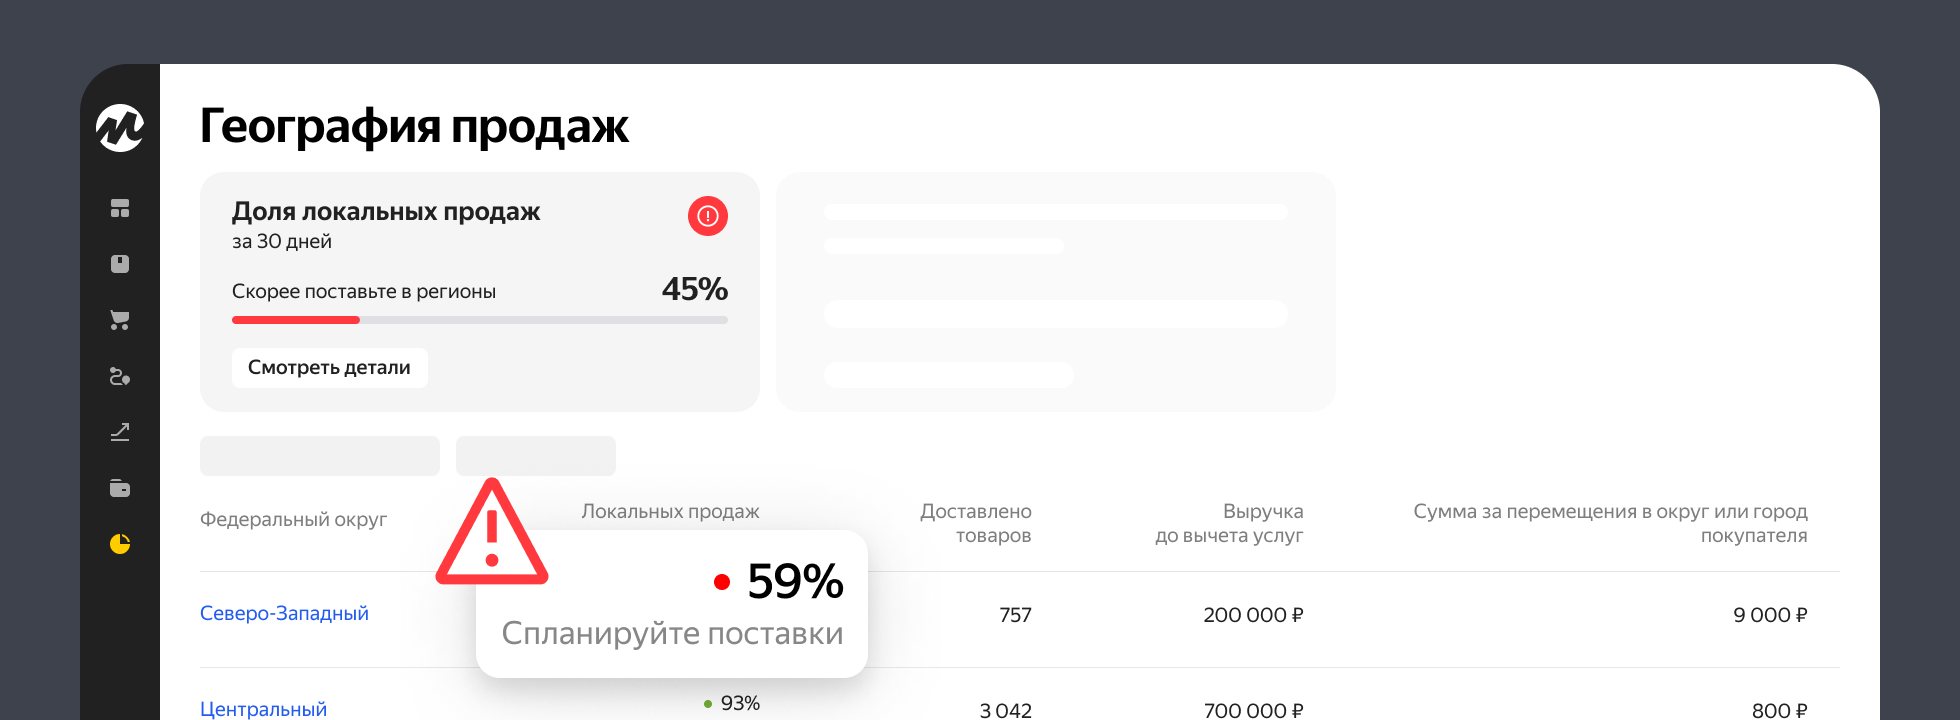 Яндекс Маркет: тариф на логистику будет зависеть от доли локальных продаж